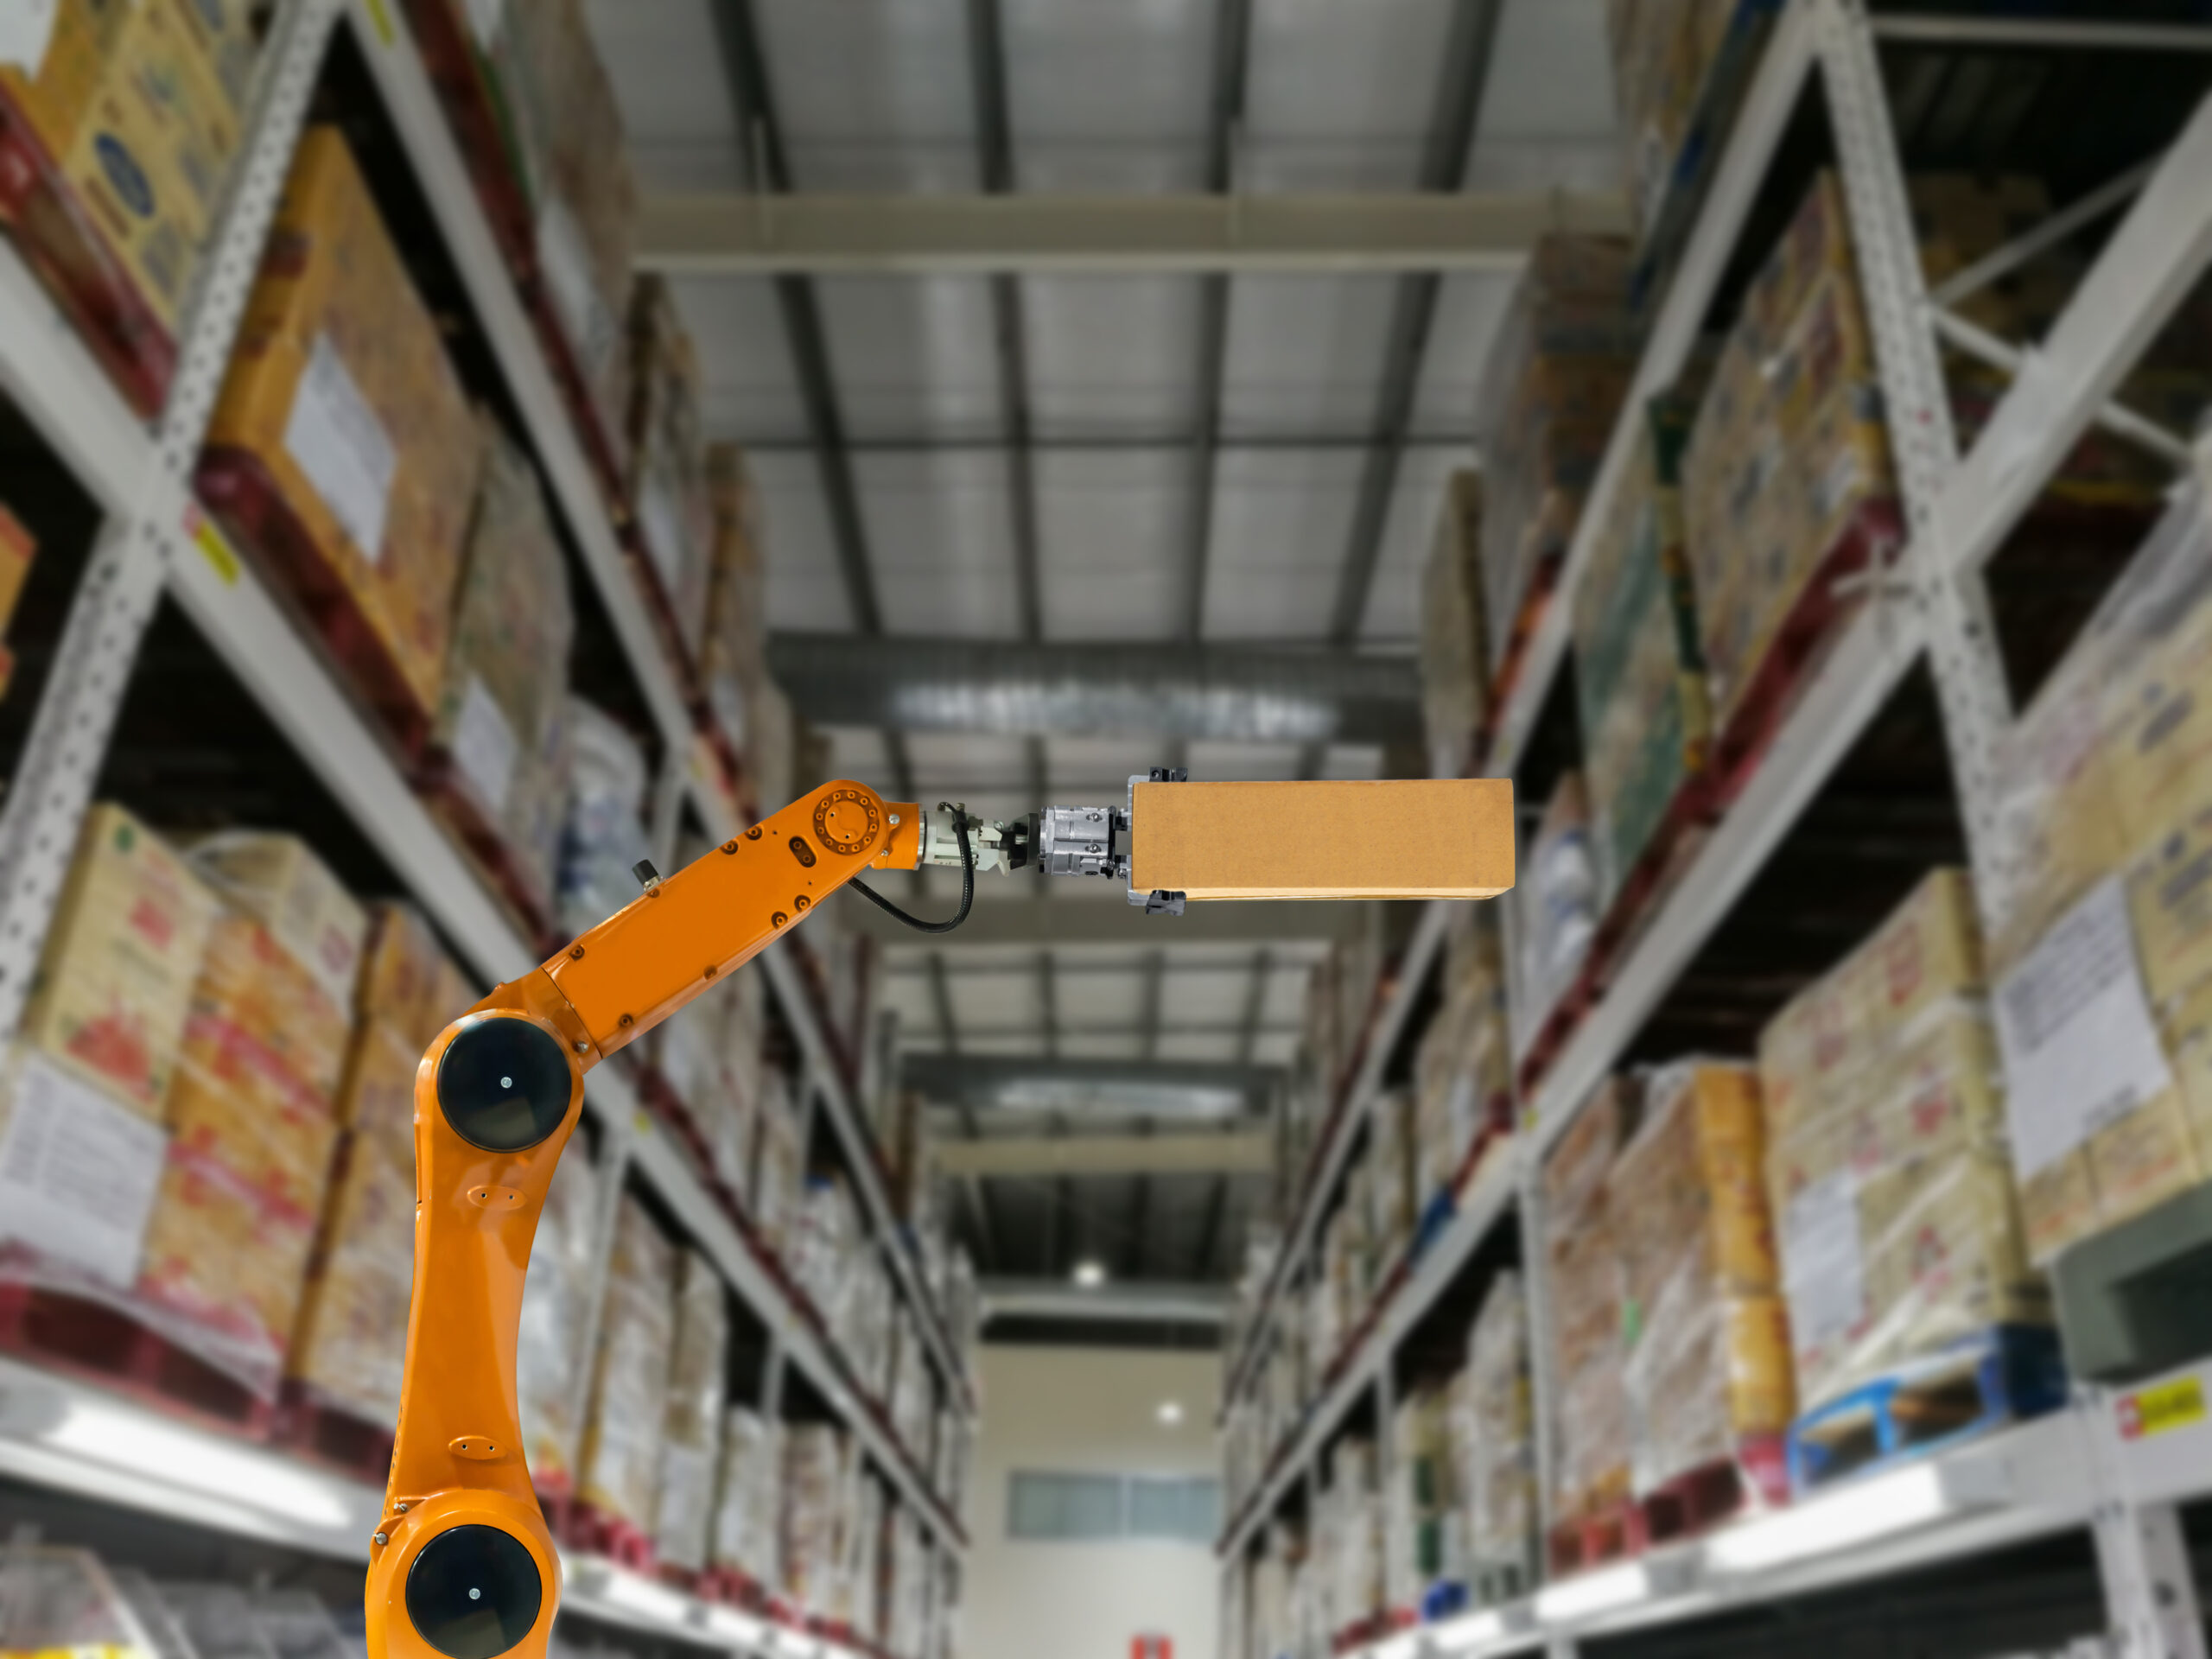 Inteligencia en robots mejora el avance en la automatización de almacenes